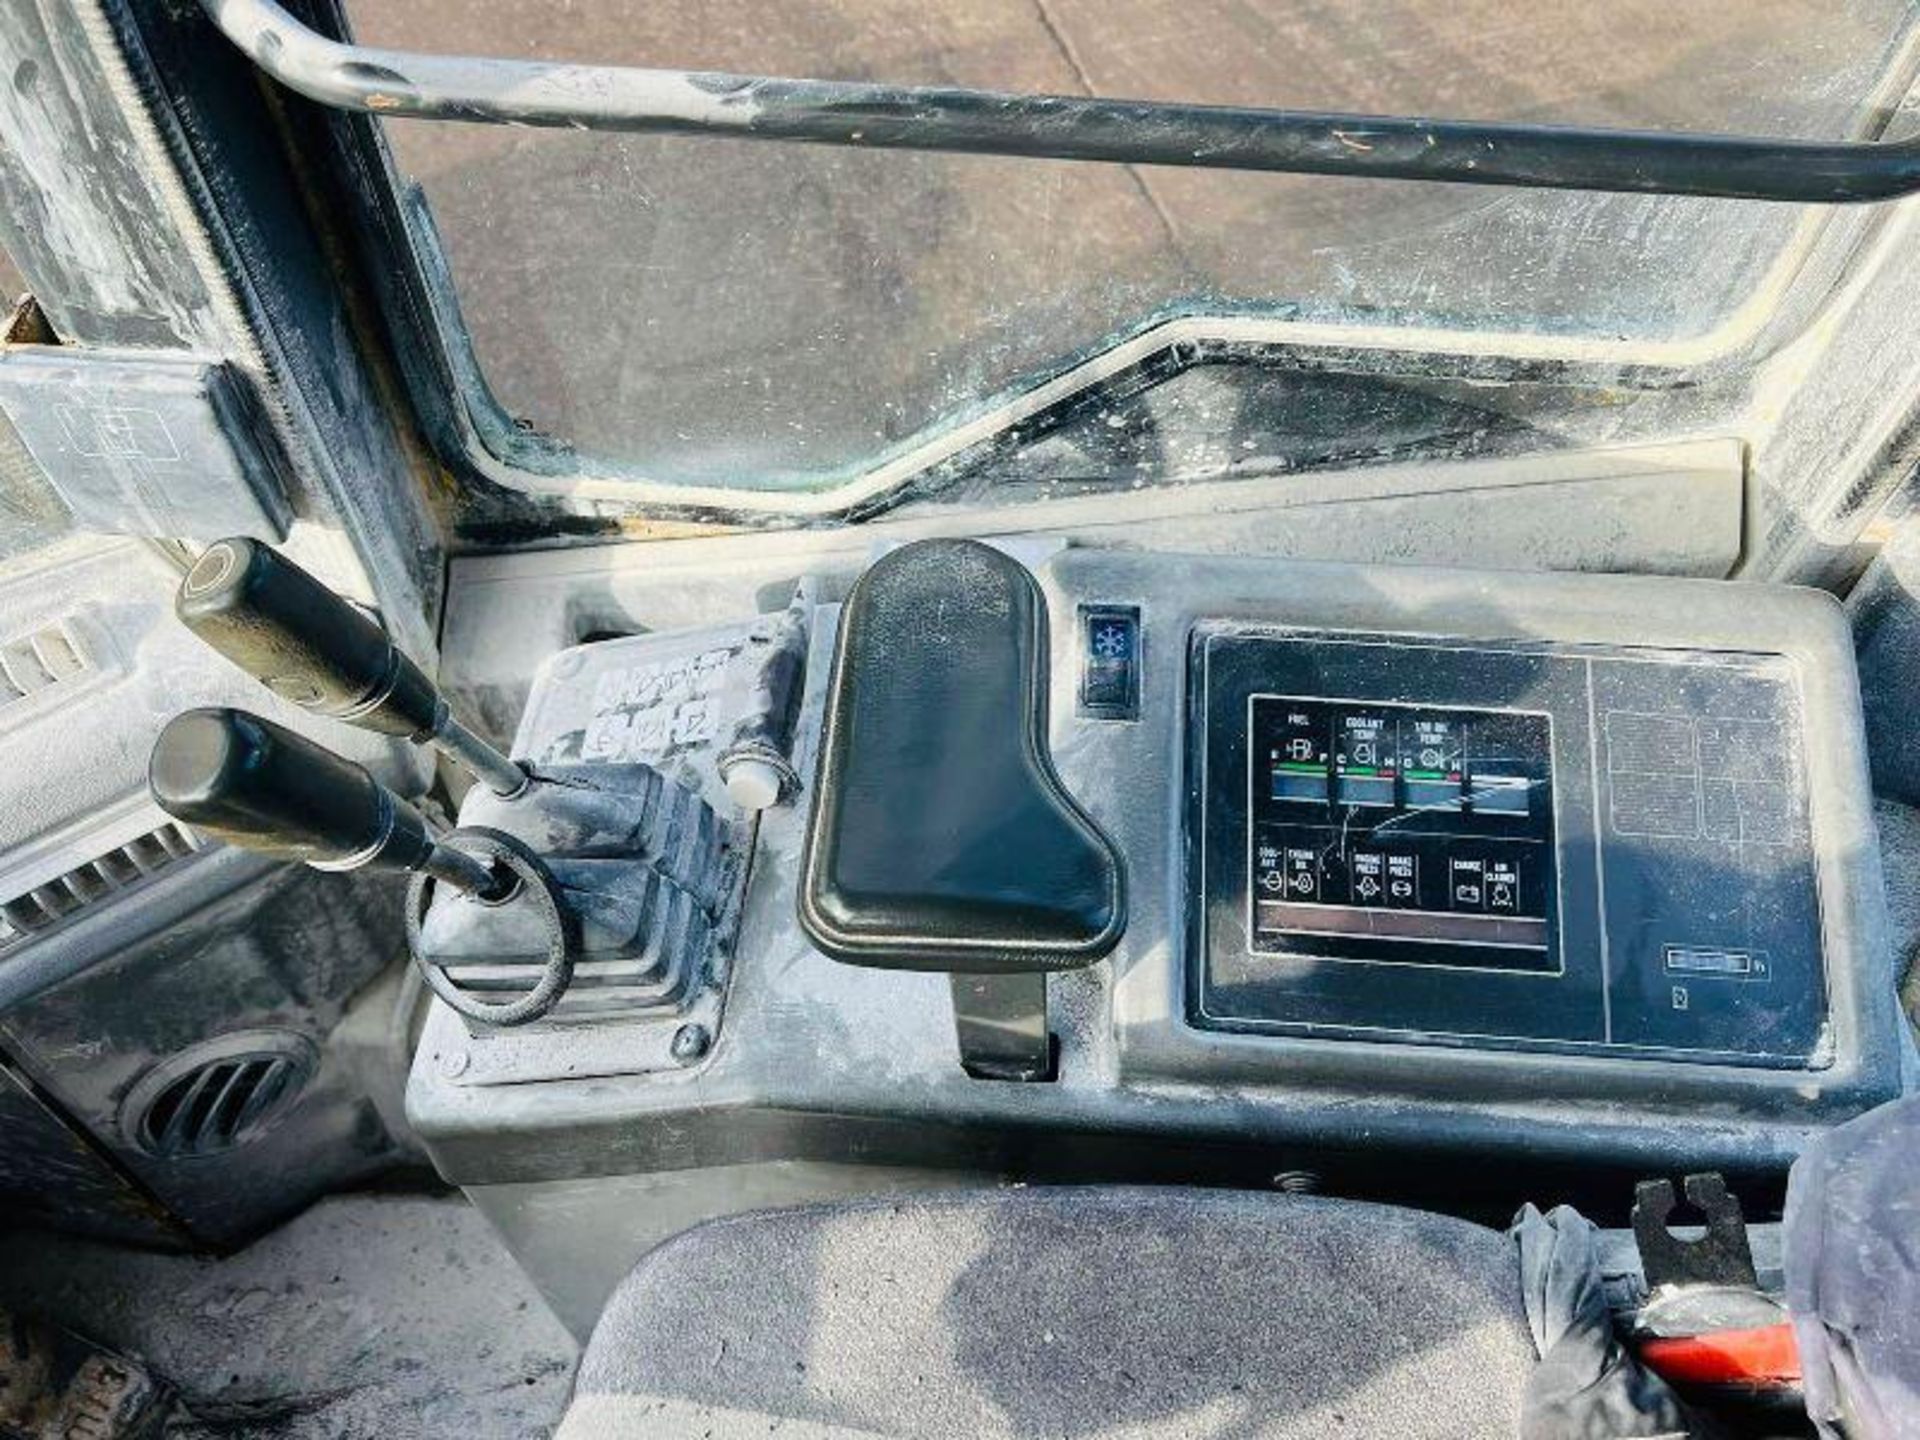 KOMATSU WA320 4WD LOADING SHOVEL C/W LOADMASTER 8000X MONITORE - Image 9 of 10